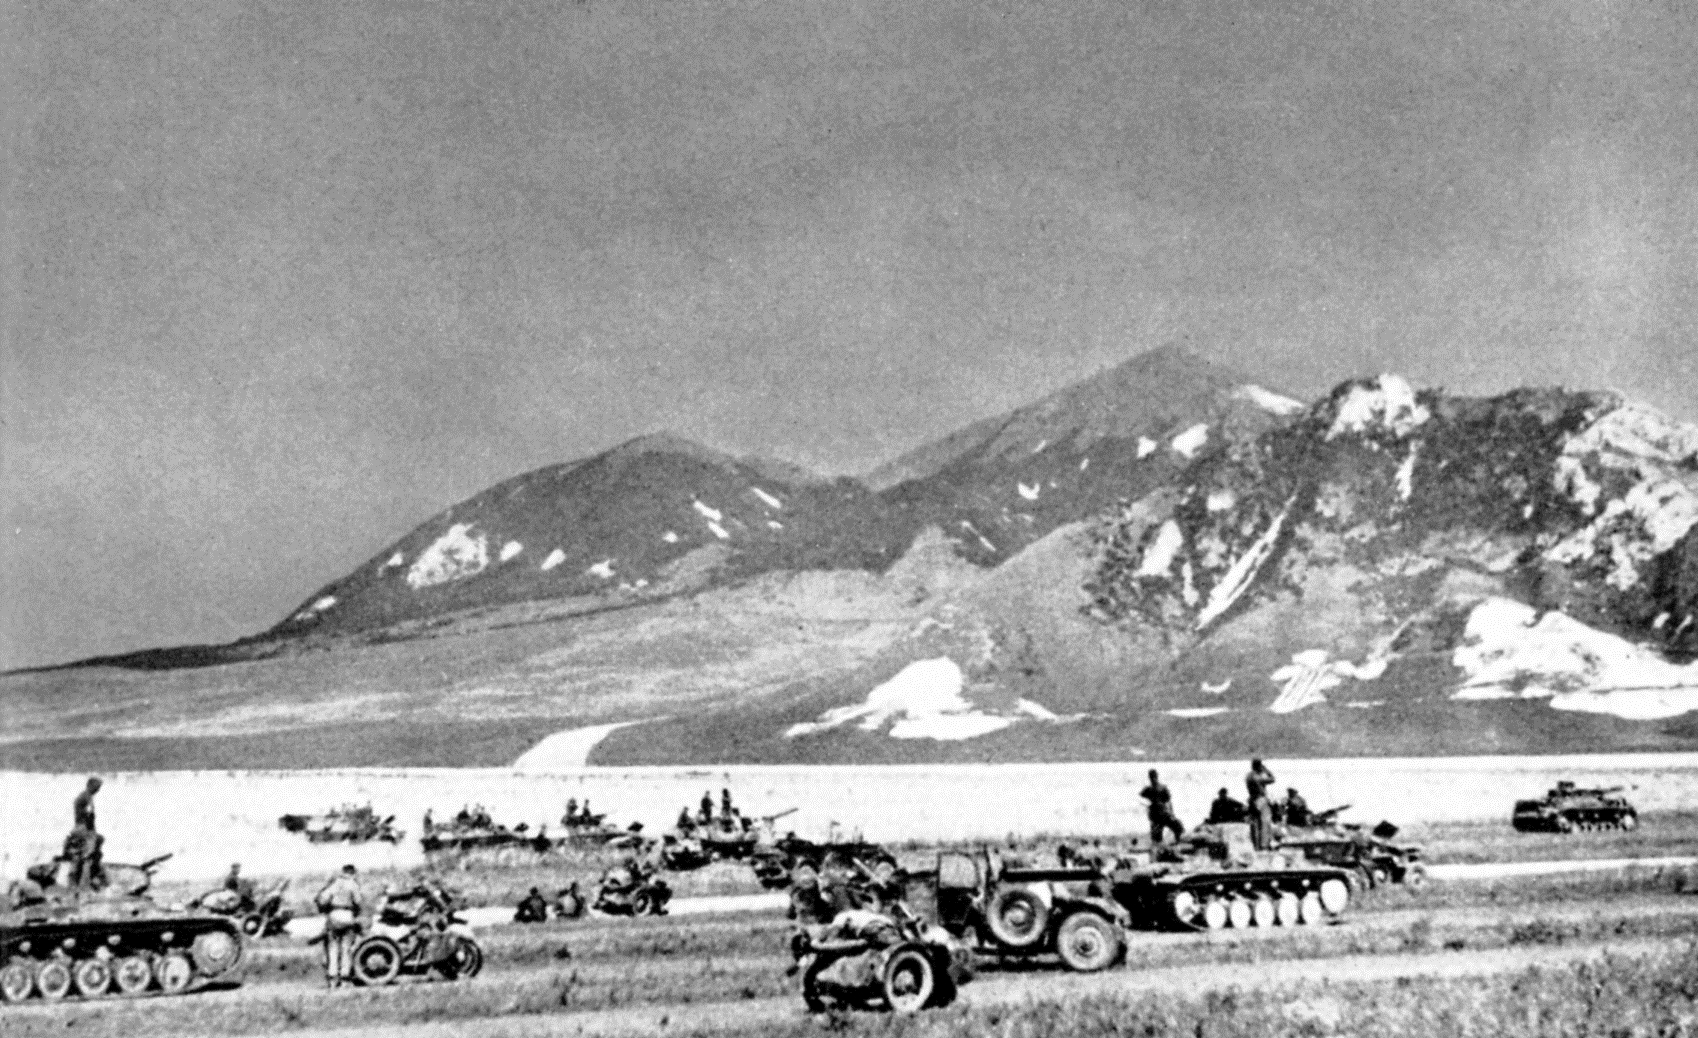 Битва за Кавказ 1942-1943